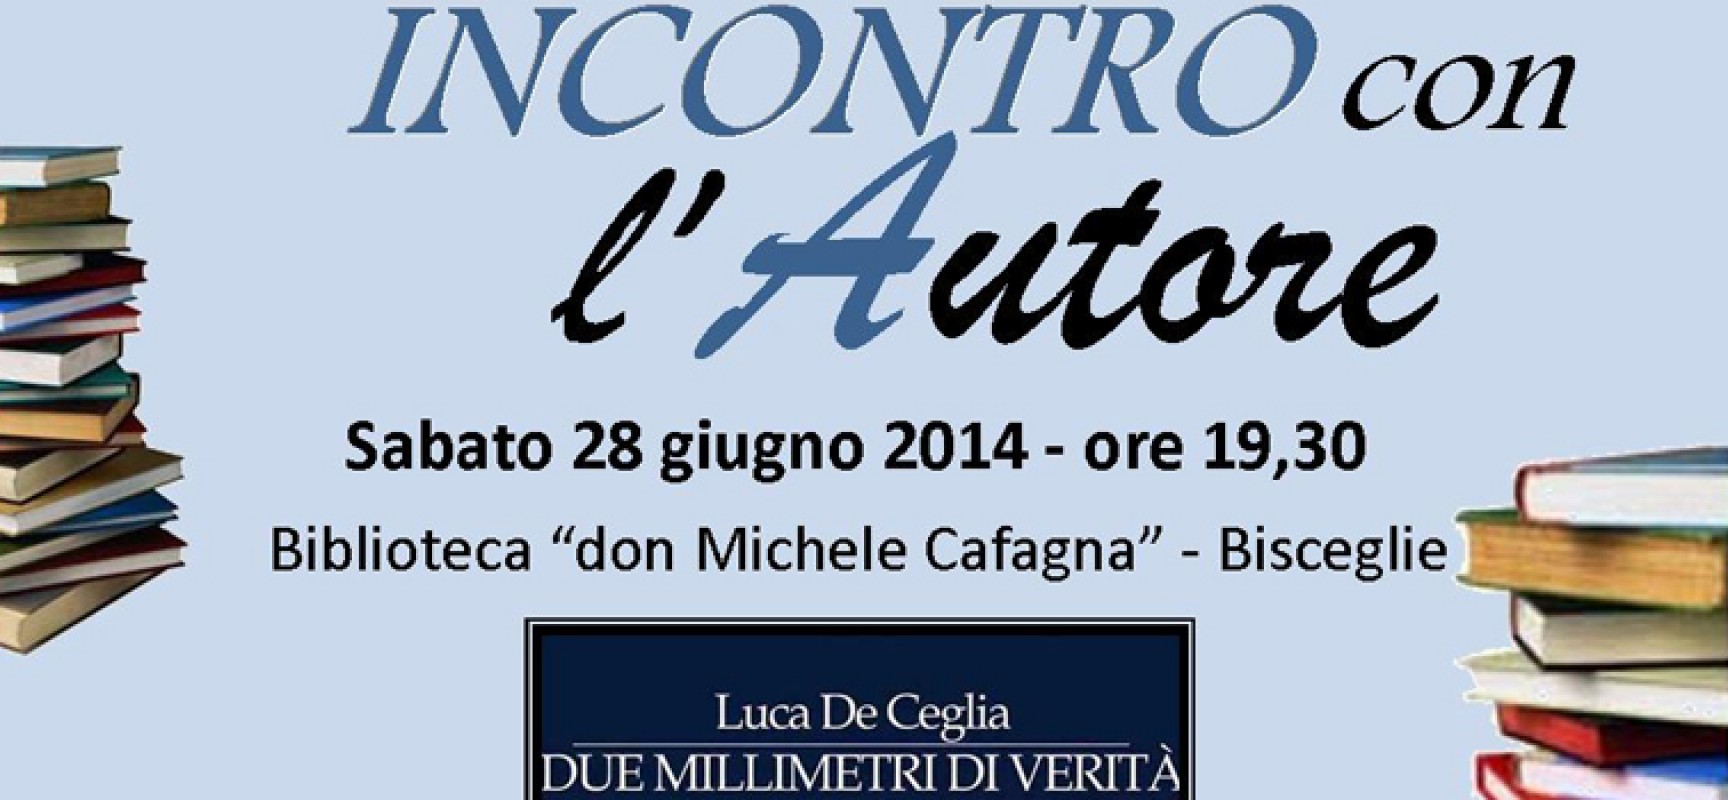 Stasera Luca De Ceglia presenta il suo libro, in dialogo con Gianluca Veneziani